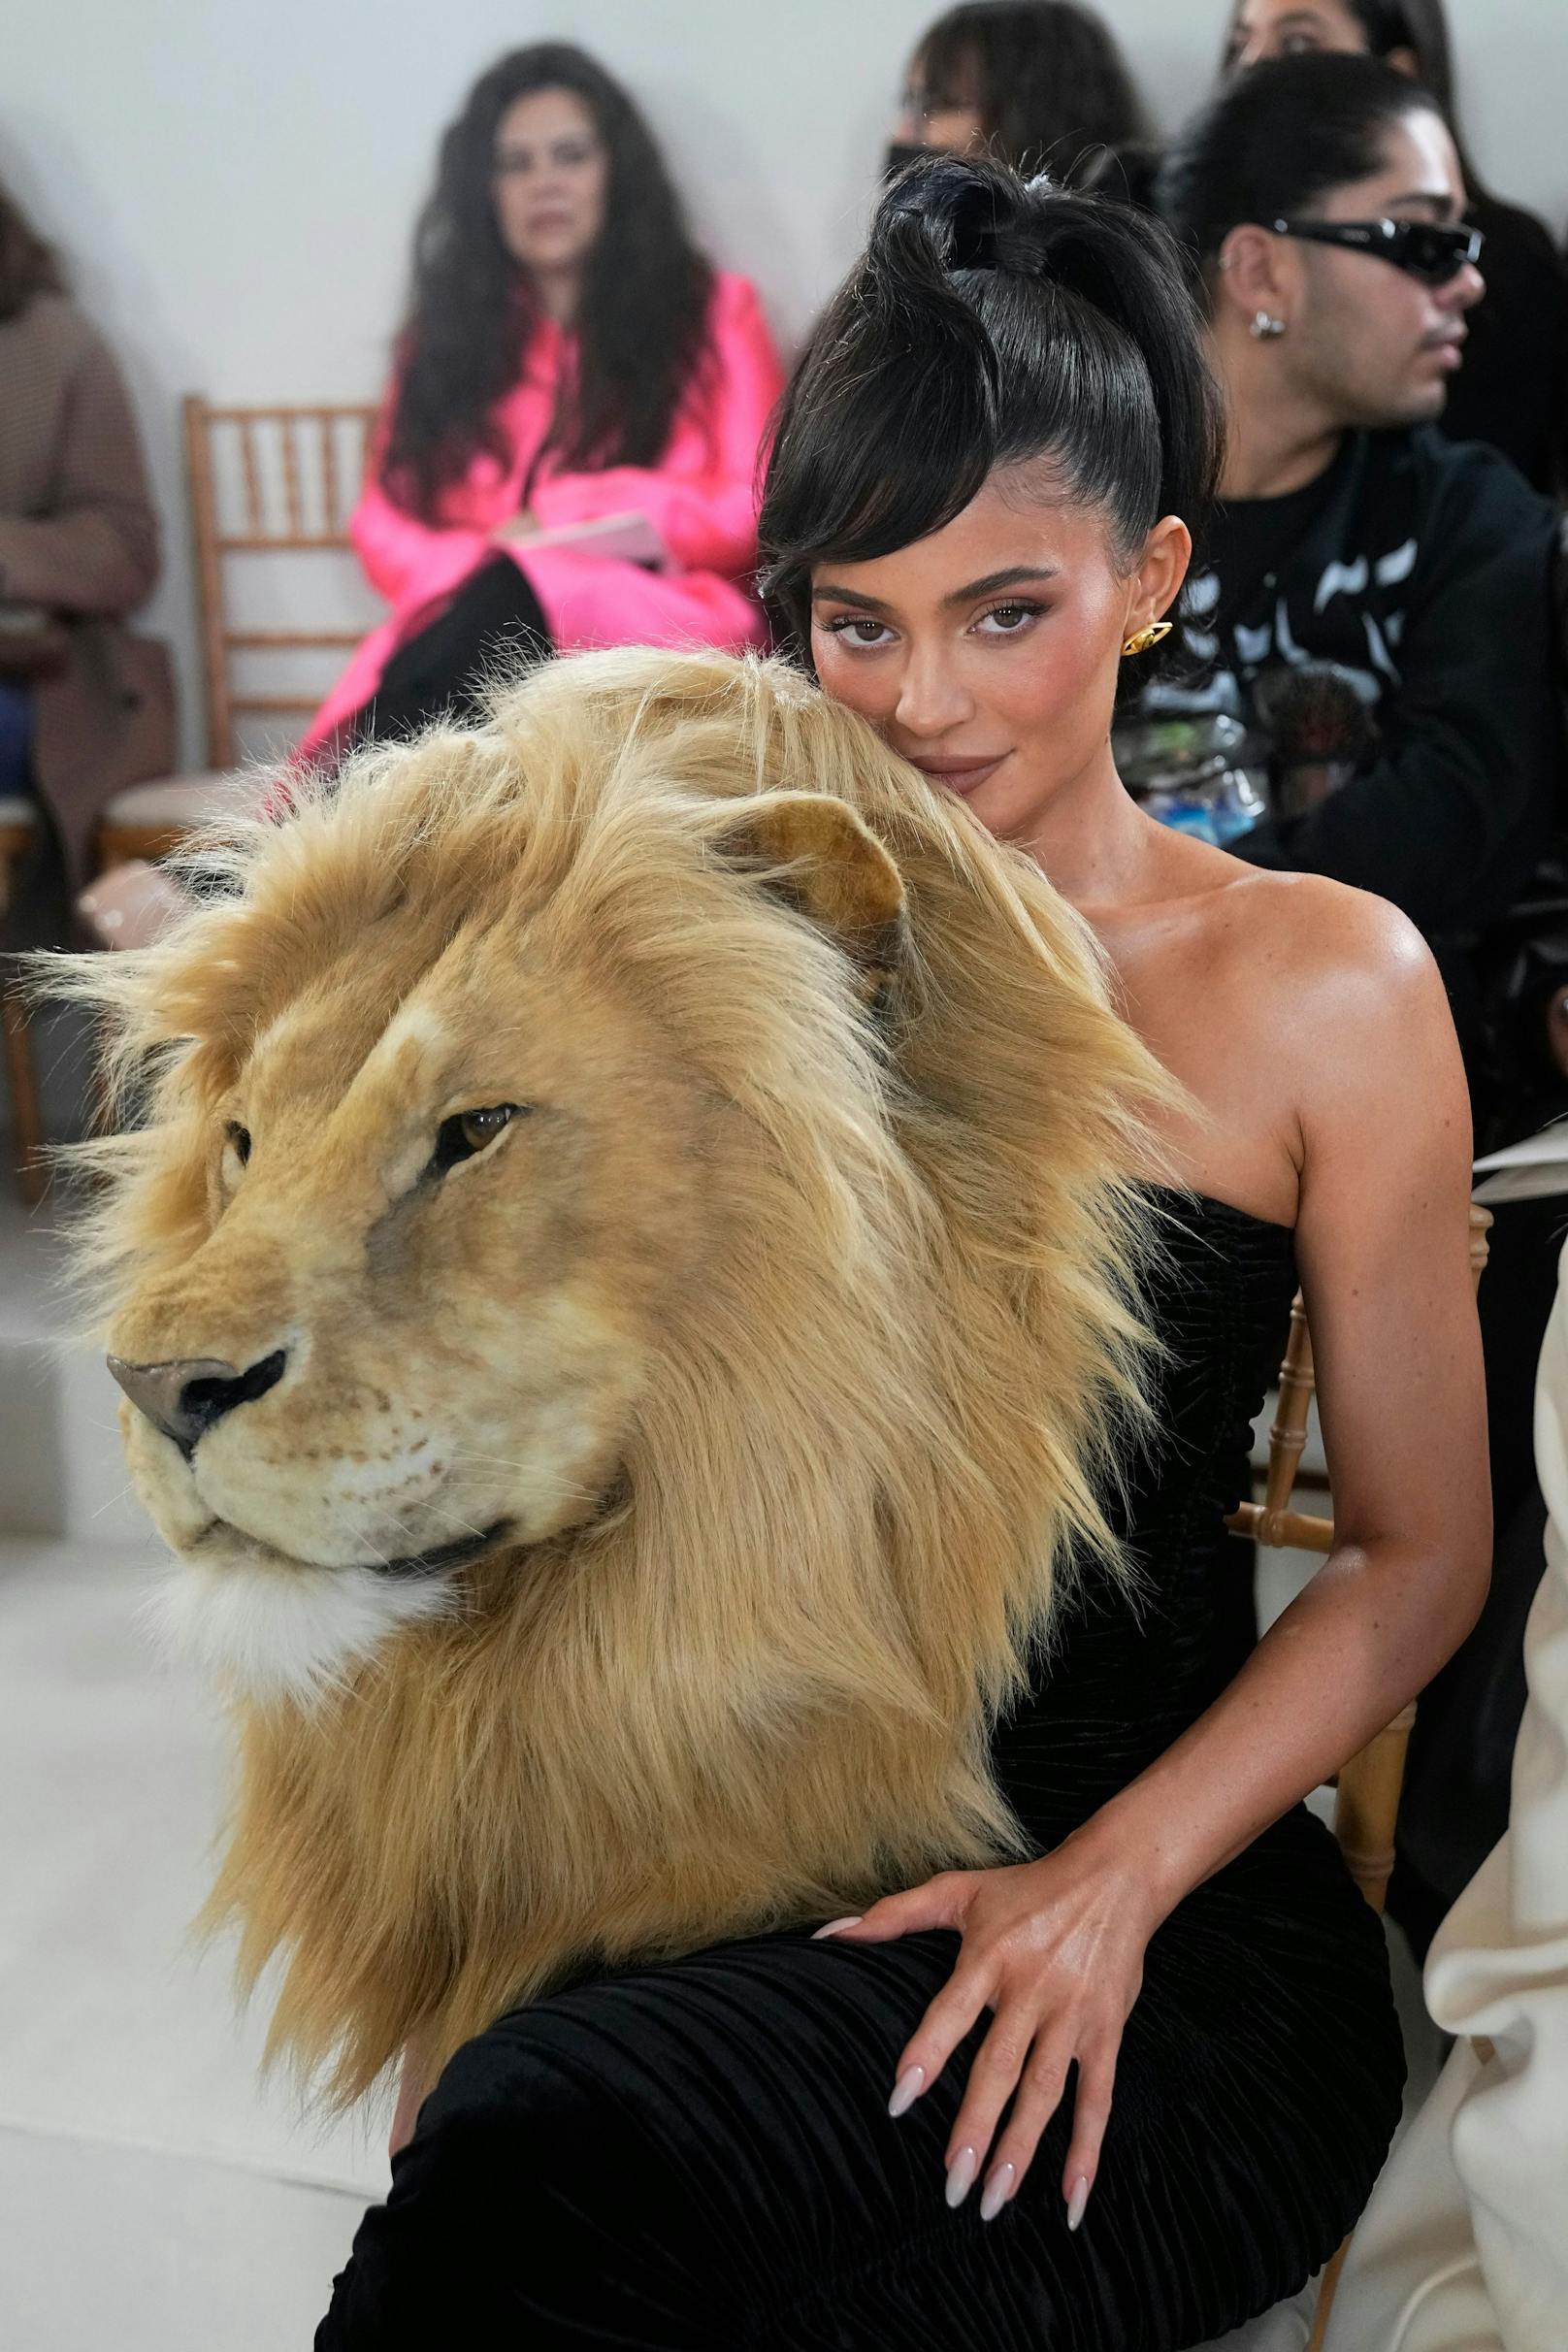 Doch kein Tier kam hier zu Schaden. Auch nicht bei Kylie Jenner, die mit Löwenkopf in der ersten Reihe Platz nahm.